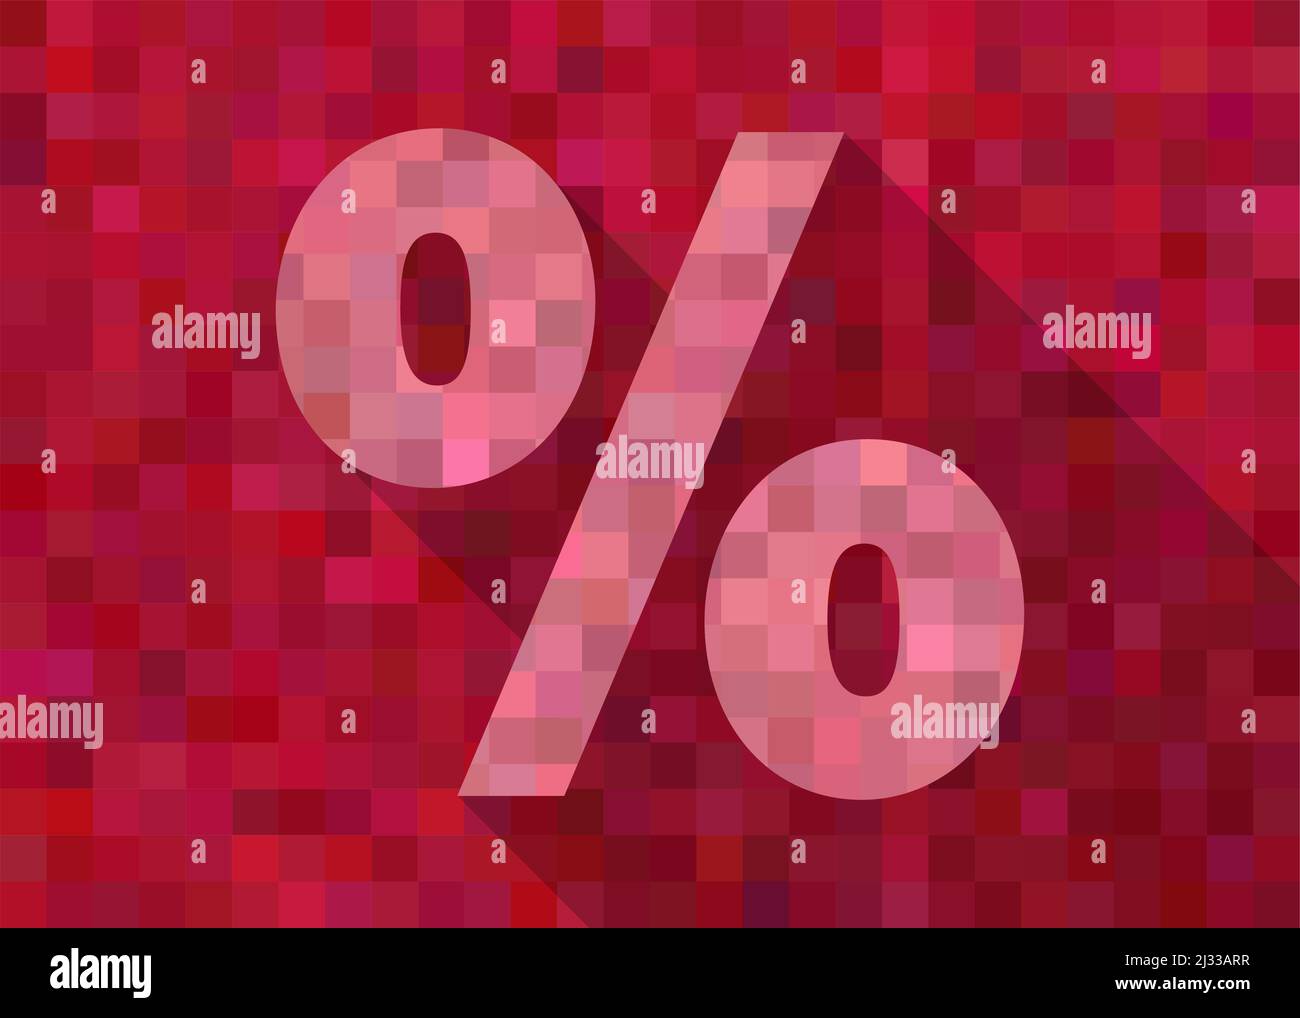 Vendita o SEGNO DI SCONTO rosso astratto pixelated con simbolo di percentuale, illustrazione vettoriale Illustrazione Vettoriale